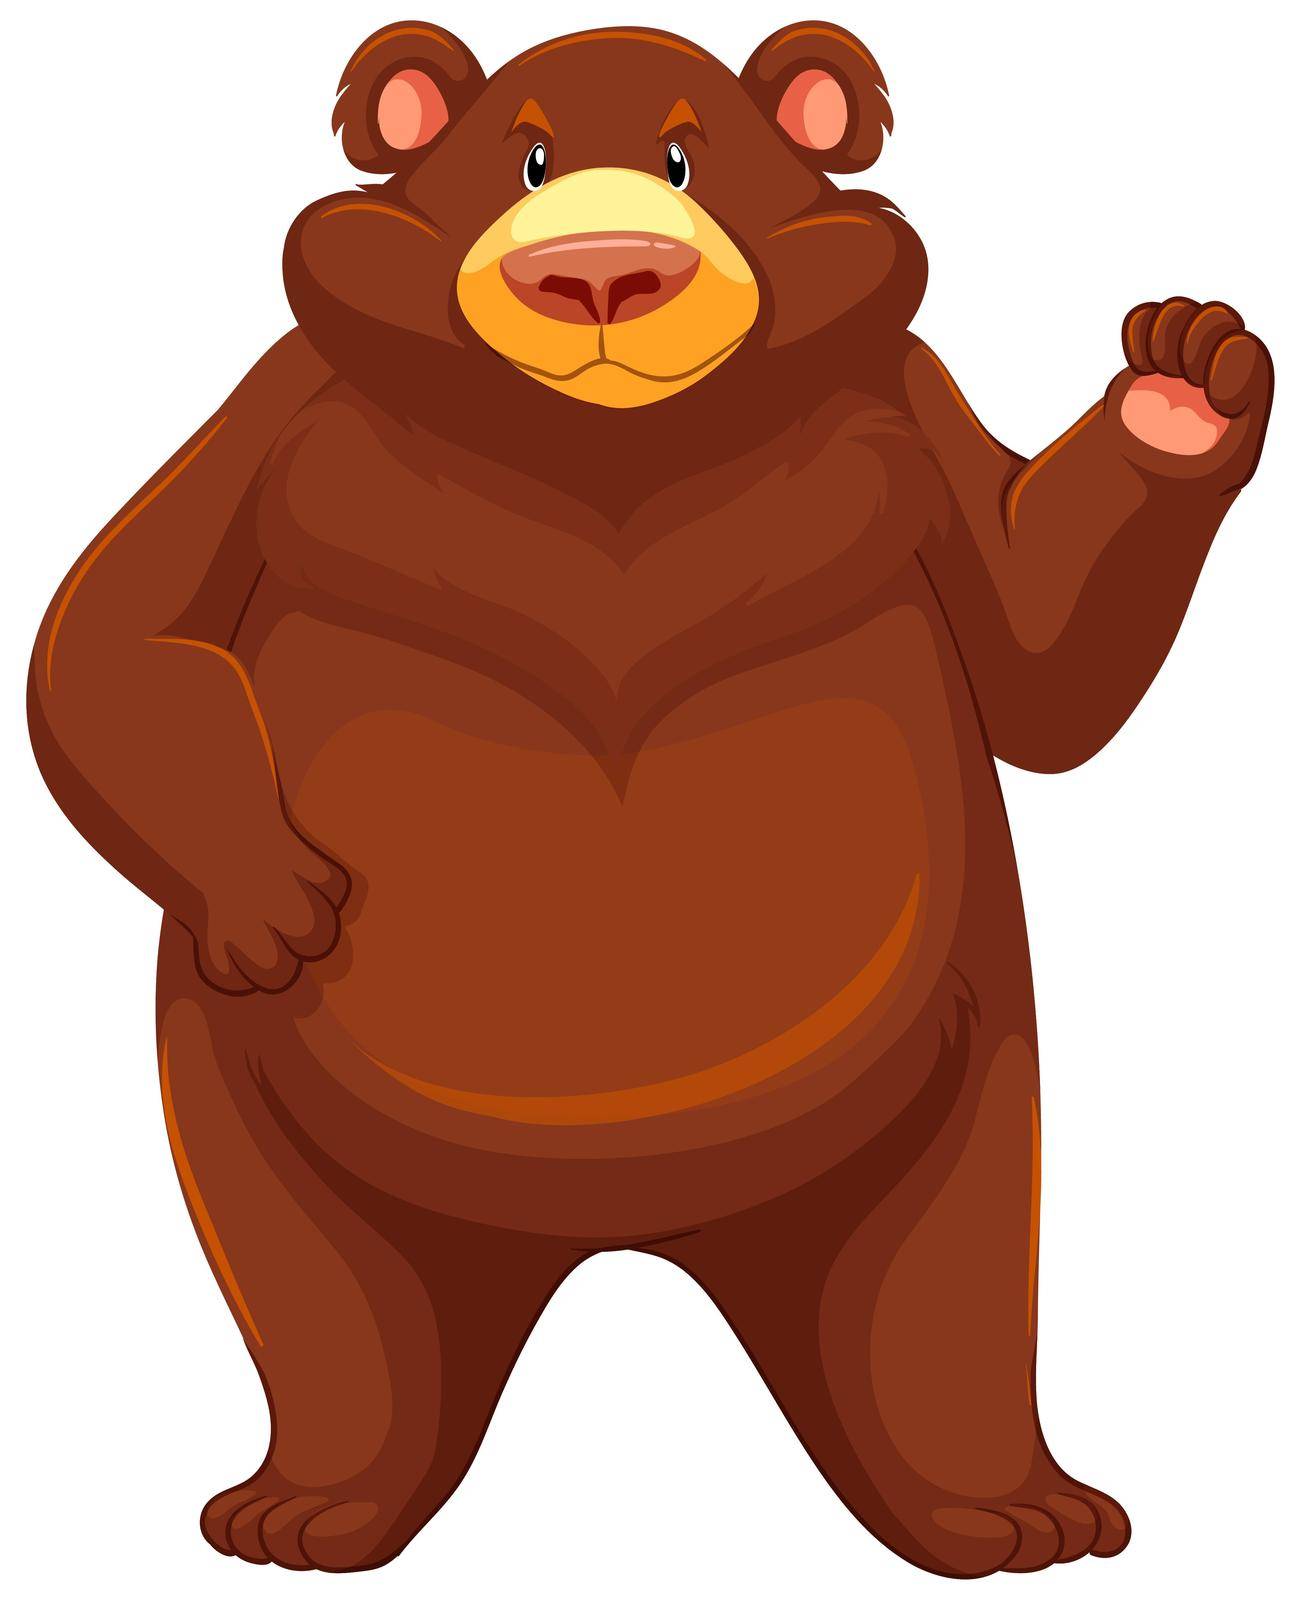 Big brown bear by iimages